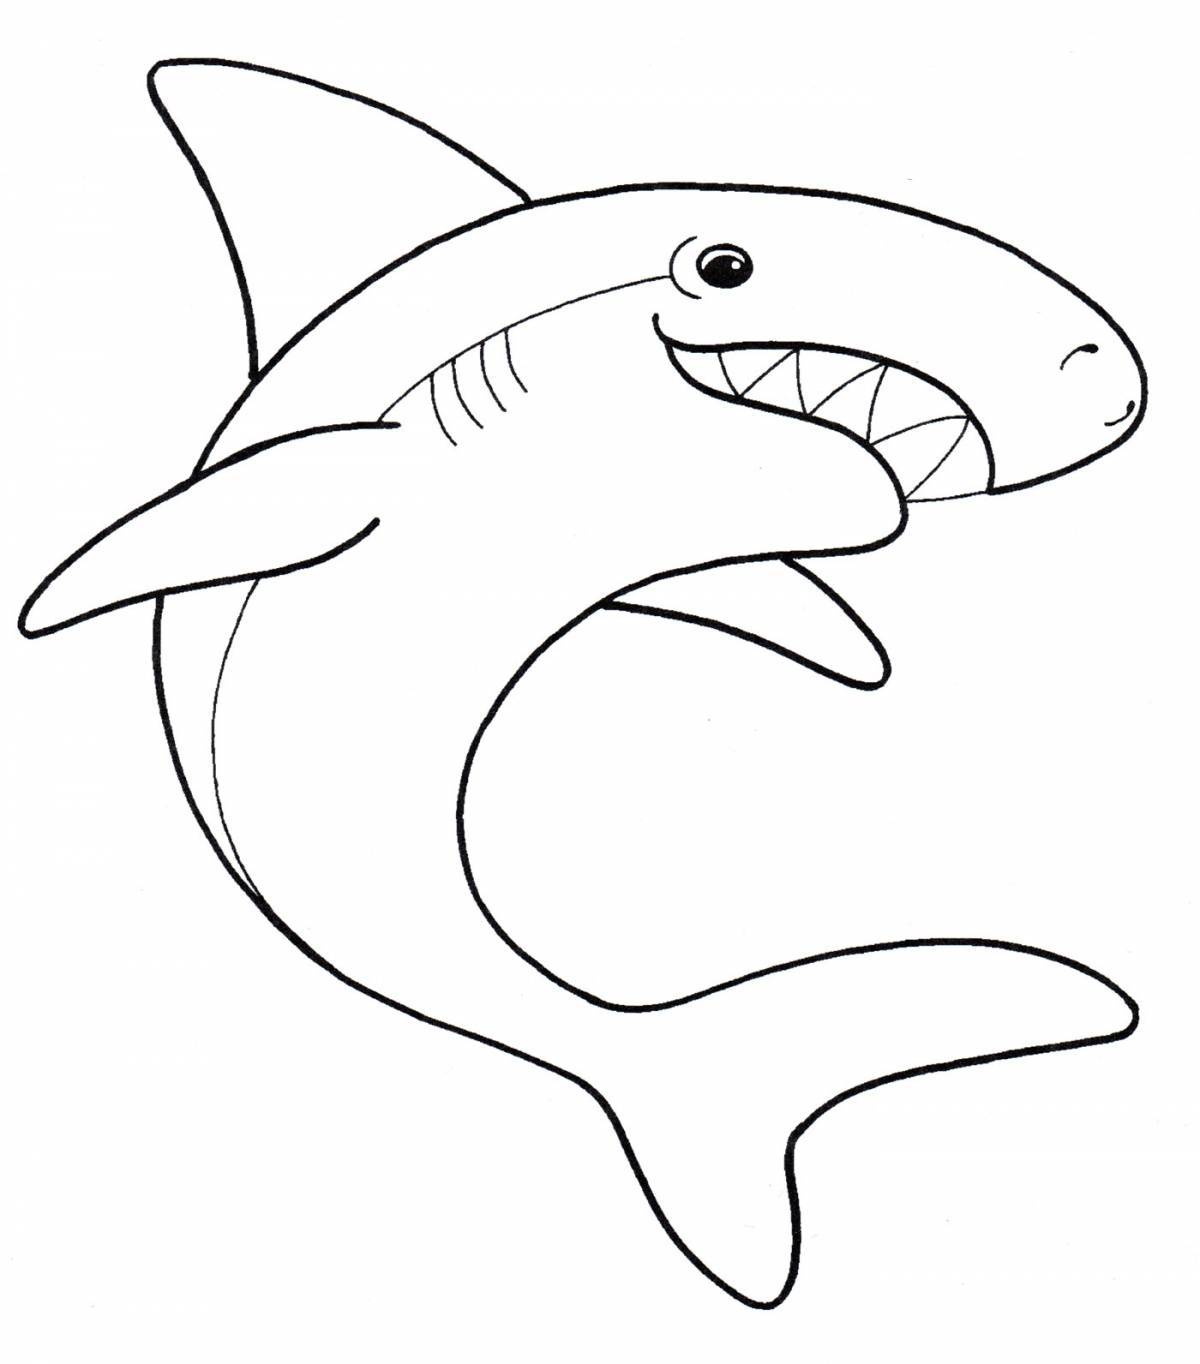 Увлекательная раскраска акулы для детей